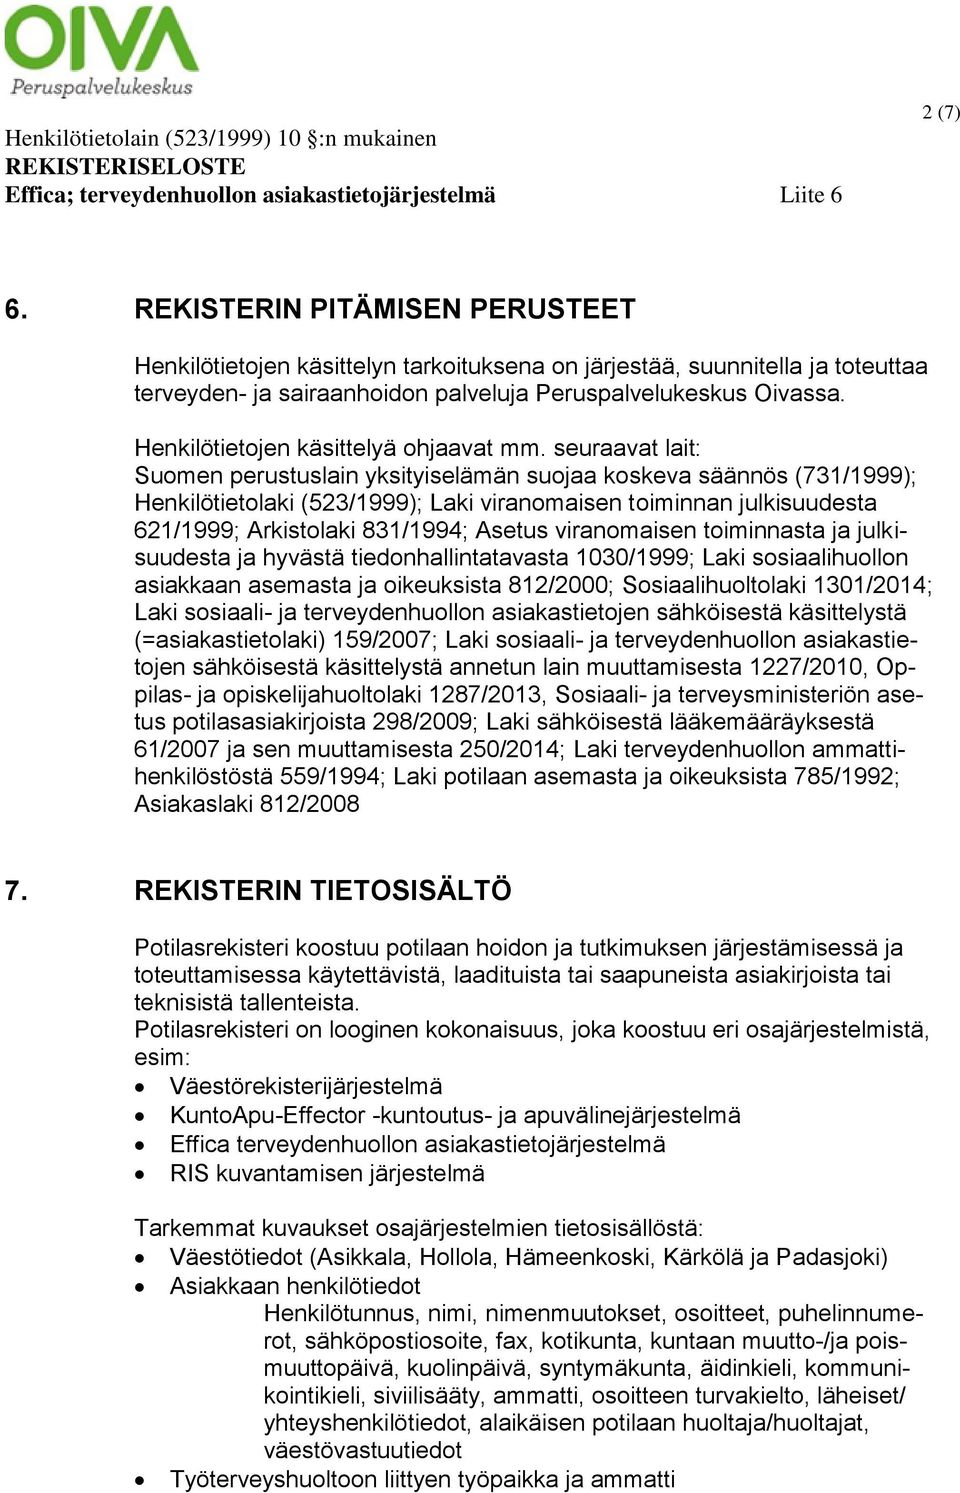 seuraavat lait: Suomen perustuslain yksityiselämän suojaa koskeva säännös (731/1999); Henkilötietolaki (523/1999); Laki viranomaisen toiminnan julkisuudesta 621/1999; Arkistolaki 831/1994; Asetus